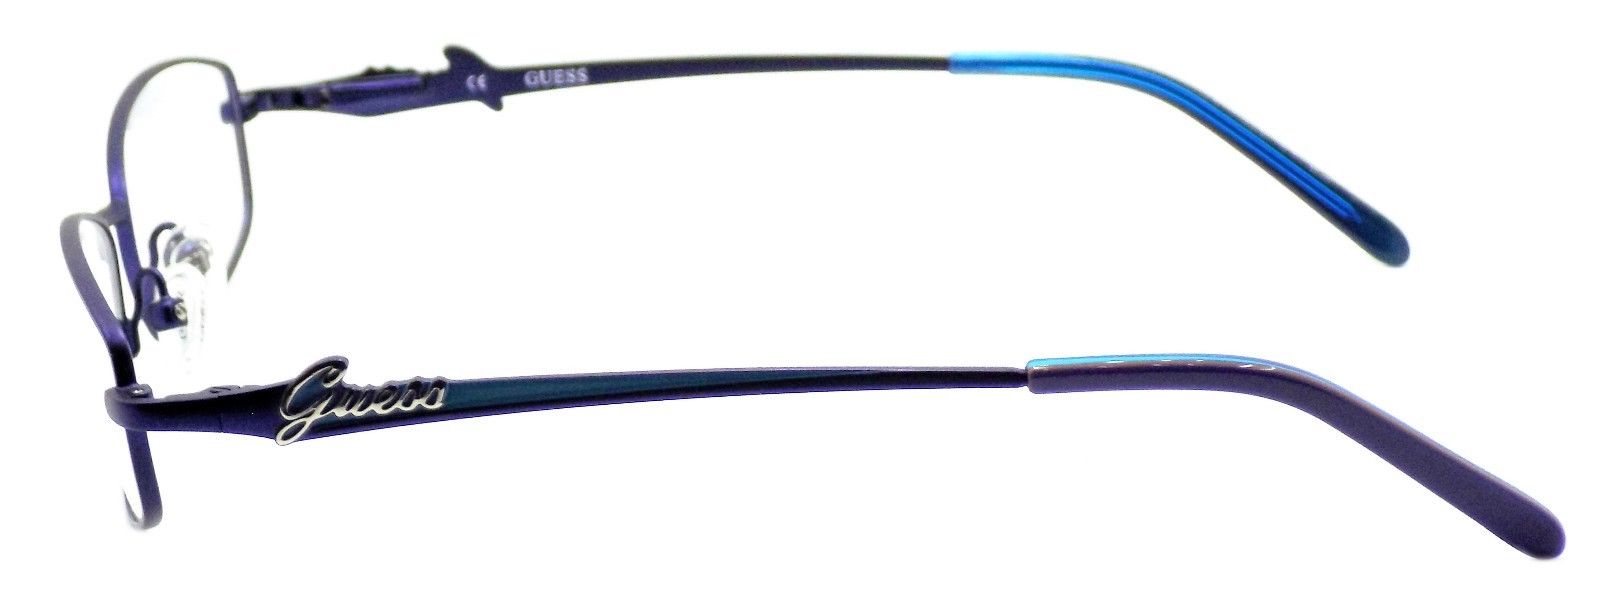 3-GUESS GU2284 BL Women's Eyeglasses Frames 51-16-135 Blue + CASE-715583443129-IKSpecs